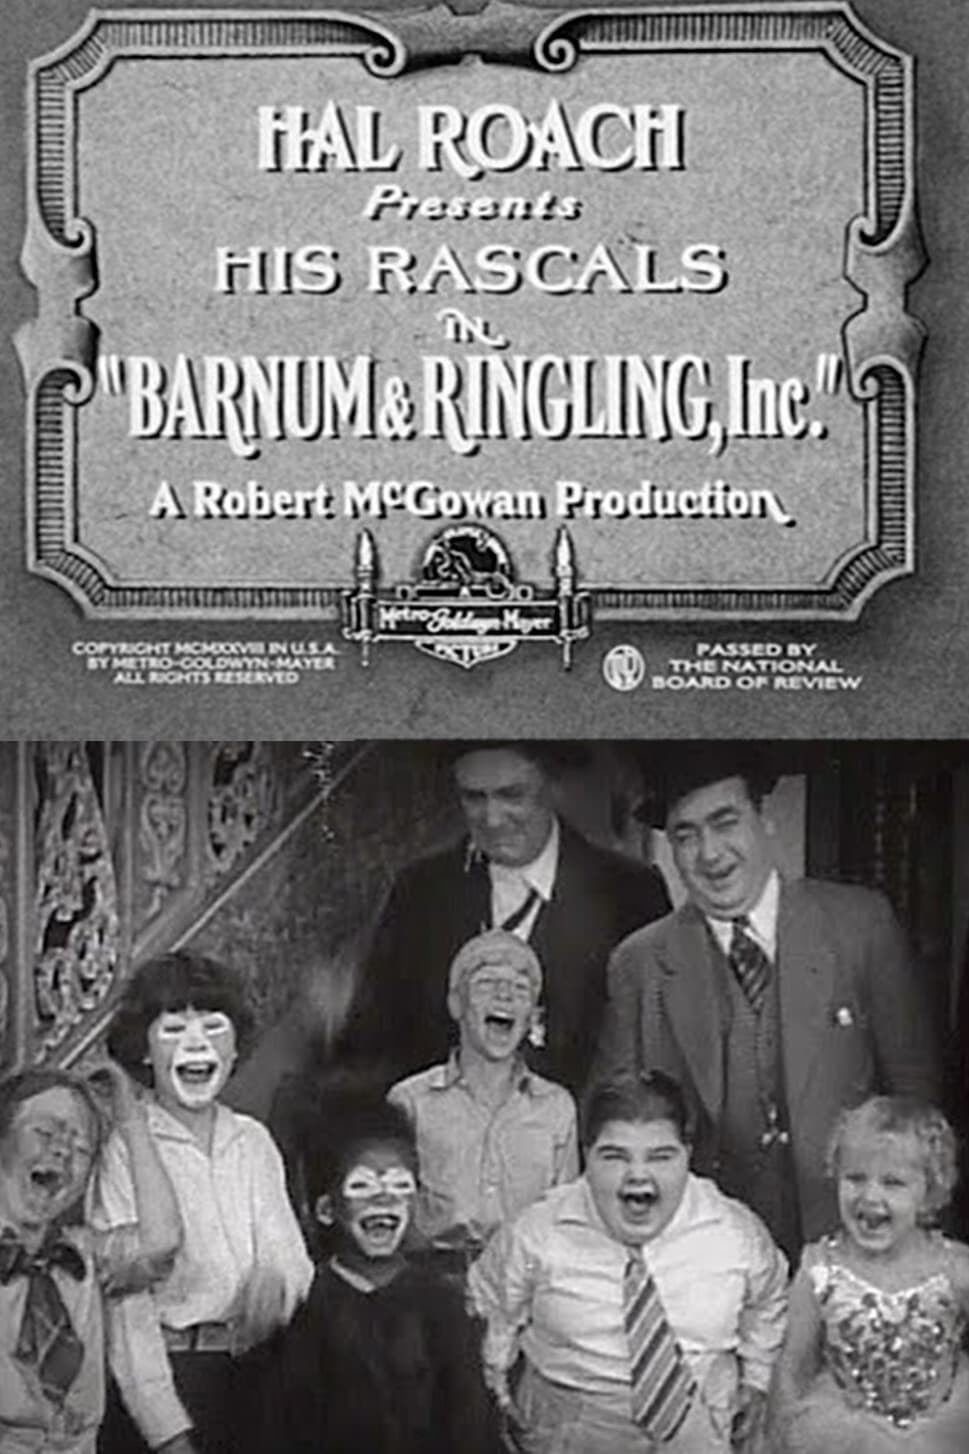 Barnum & Ringling, Inc. (1928)